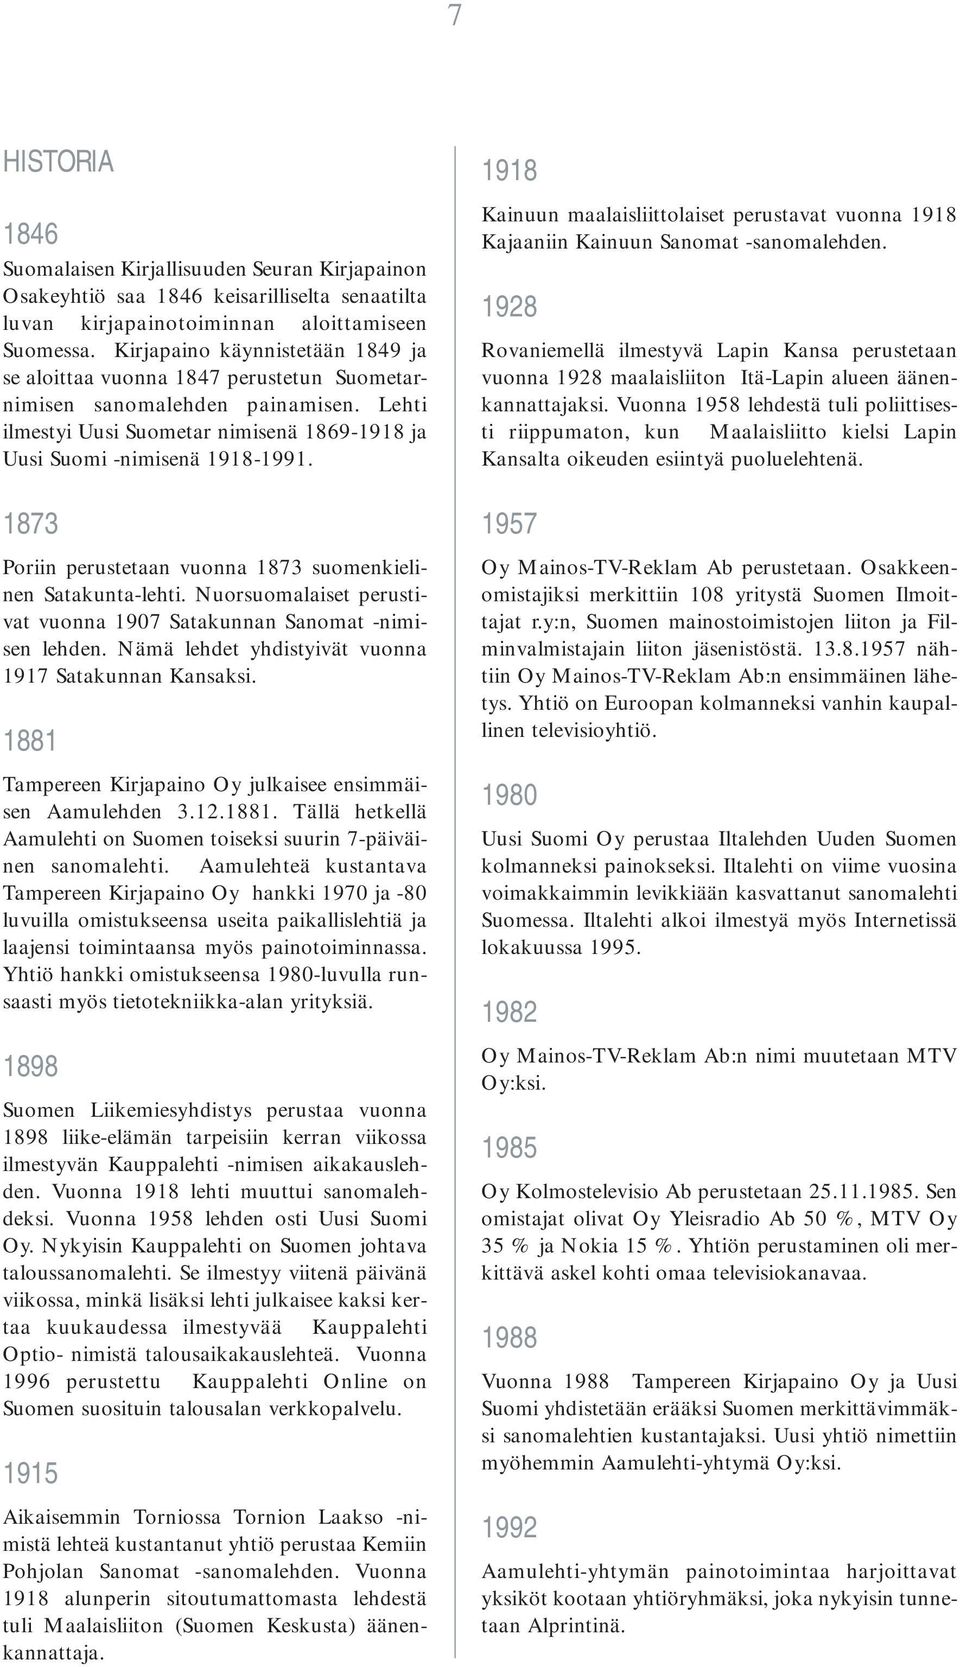 1873 Poriin perustetaan vuonna 1873 suomenkielinen Satakunta-lehti. Nuorsuomalaiset perustivat vuonna 1907 Satakunnan Sanomat -nimisen lehden. Nämä lehdet yhdistyivät vuonna 1917 Satakunnan Kansaksi.